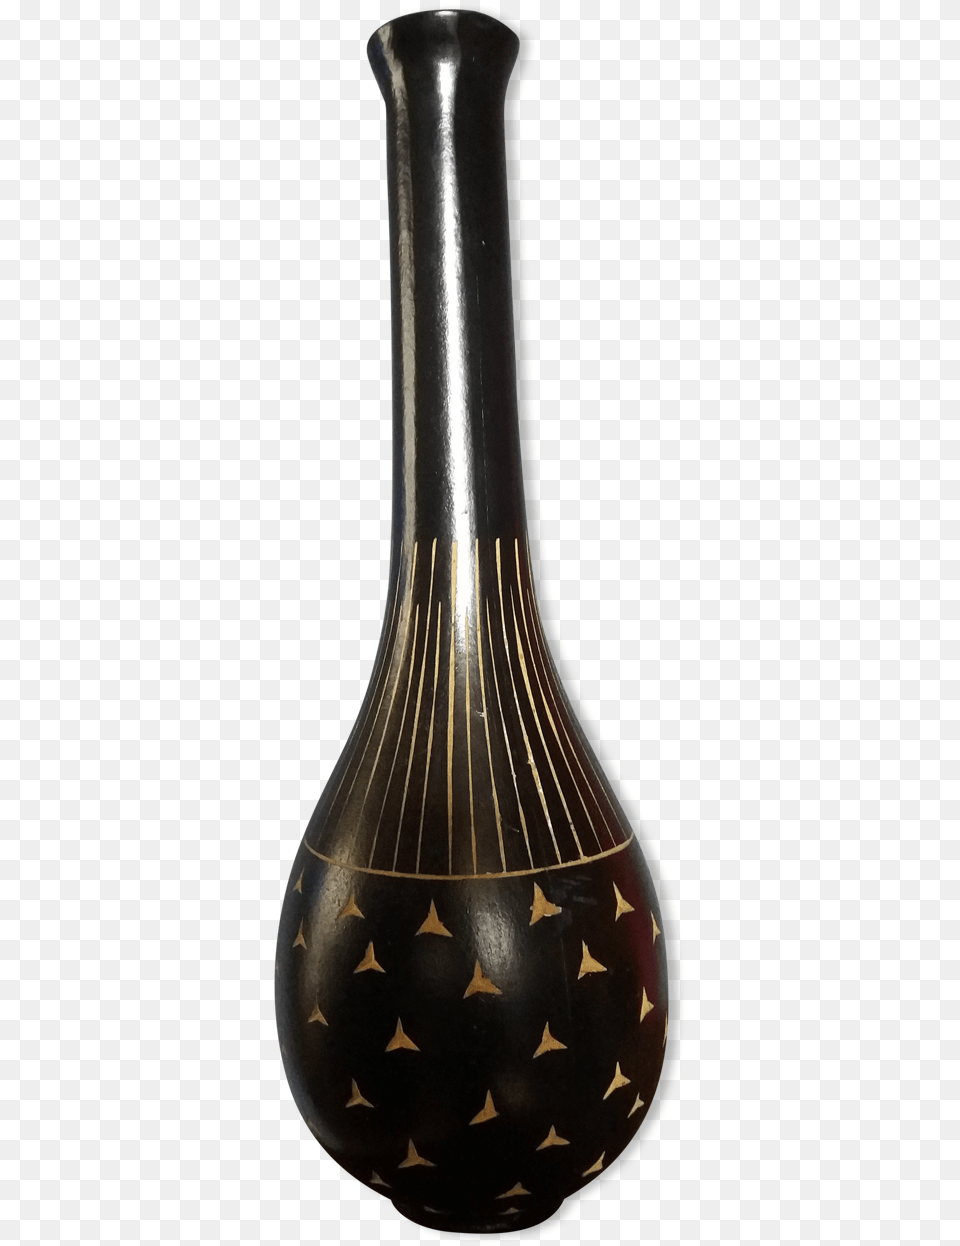 Vase, Jar, Pottery Png